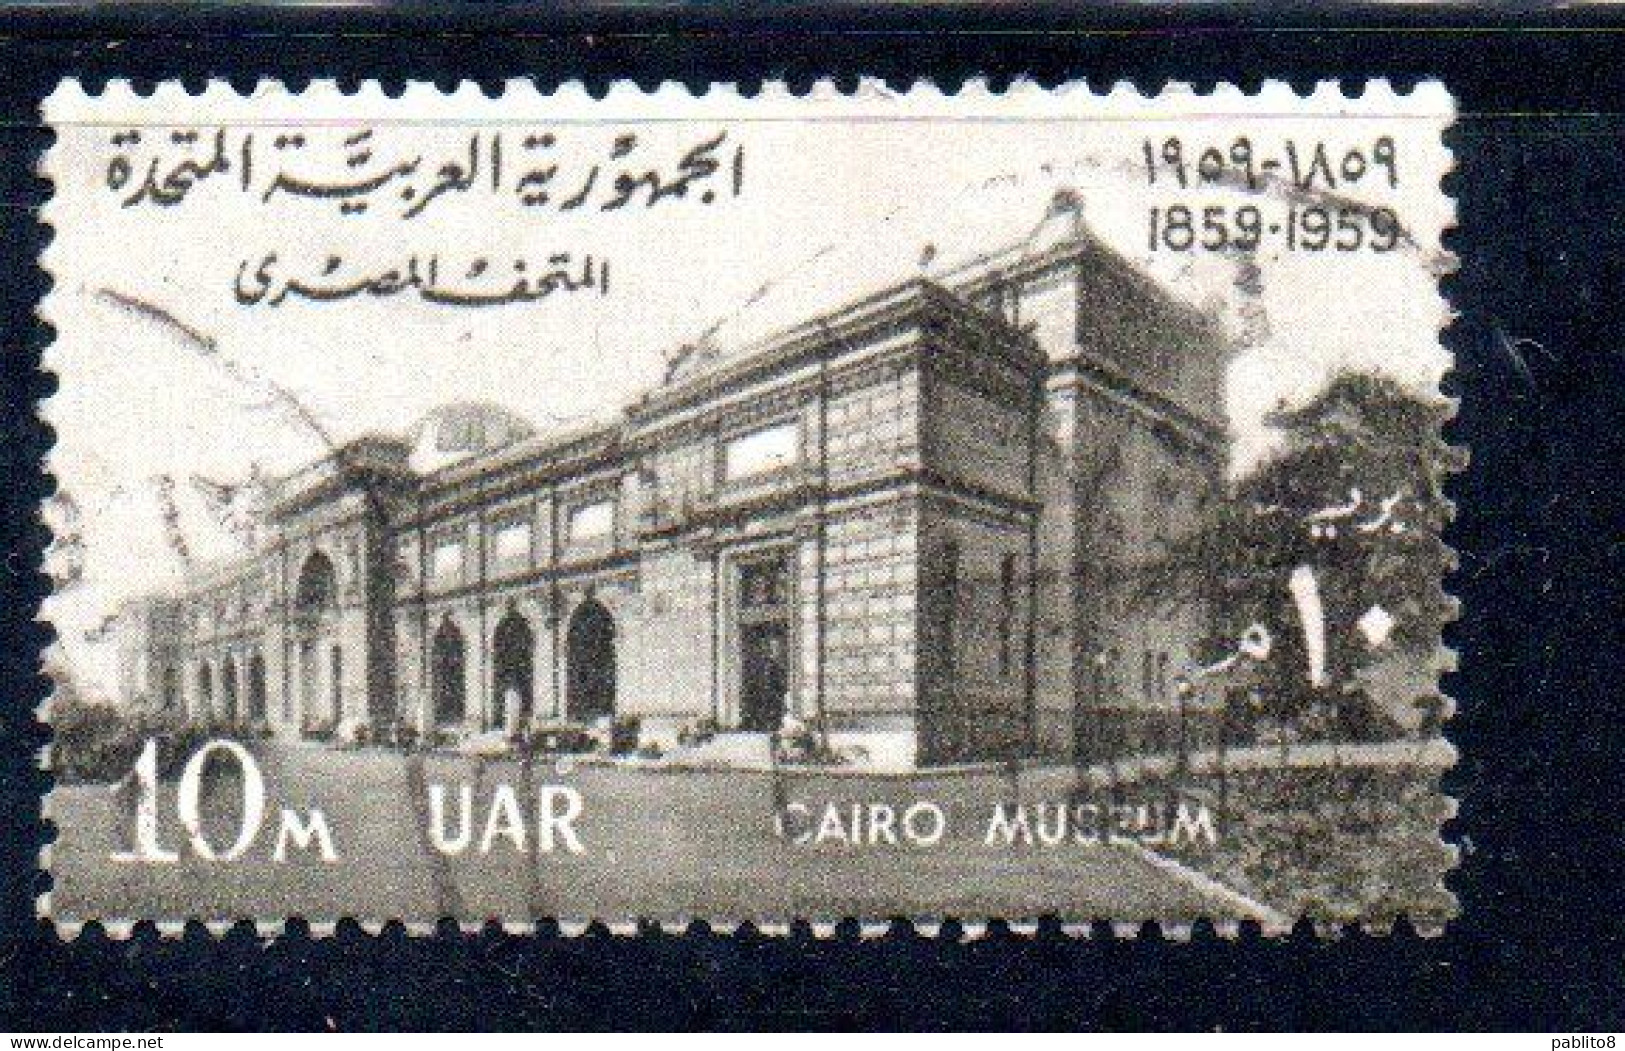 UAR EGYPT EGITTO 1959 CENTENARY OF CAIRO MUSEUM 10m USED USATO OBLITERE' - Oblitérés